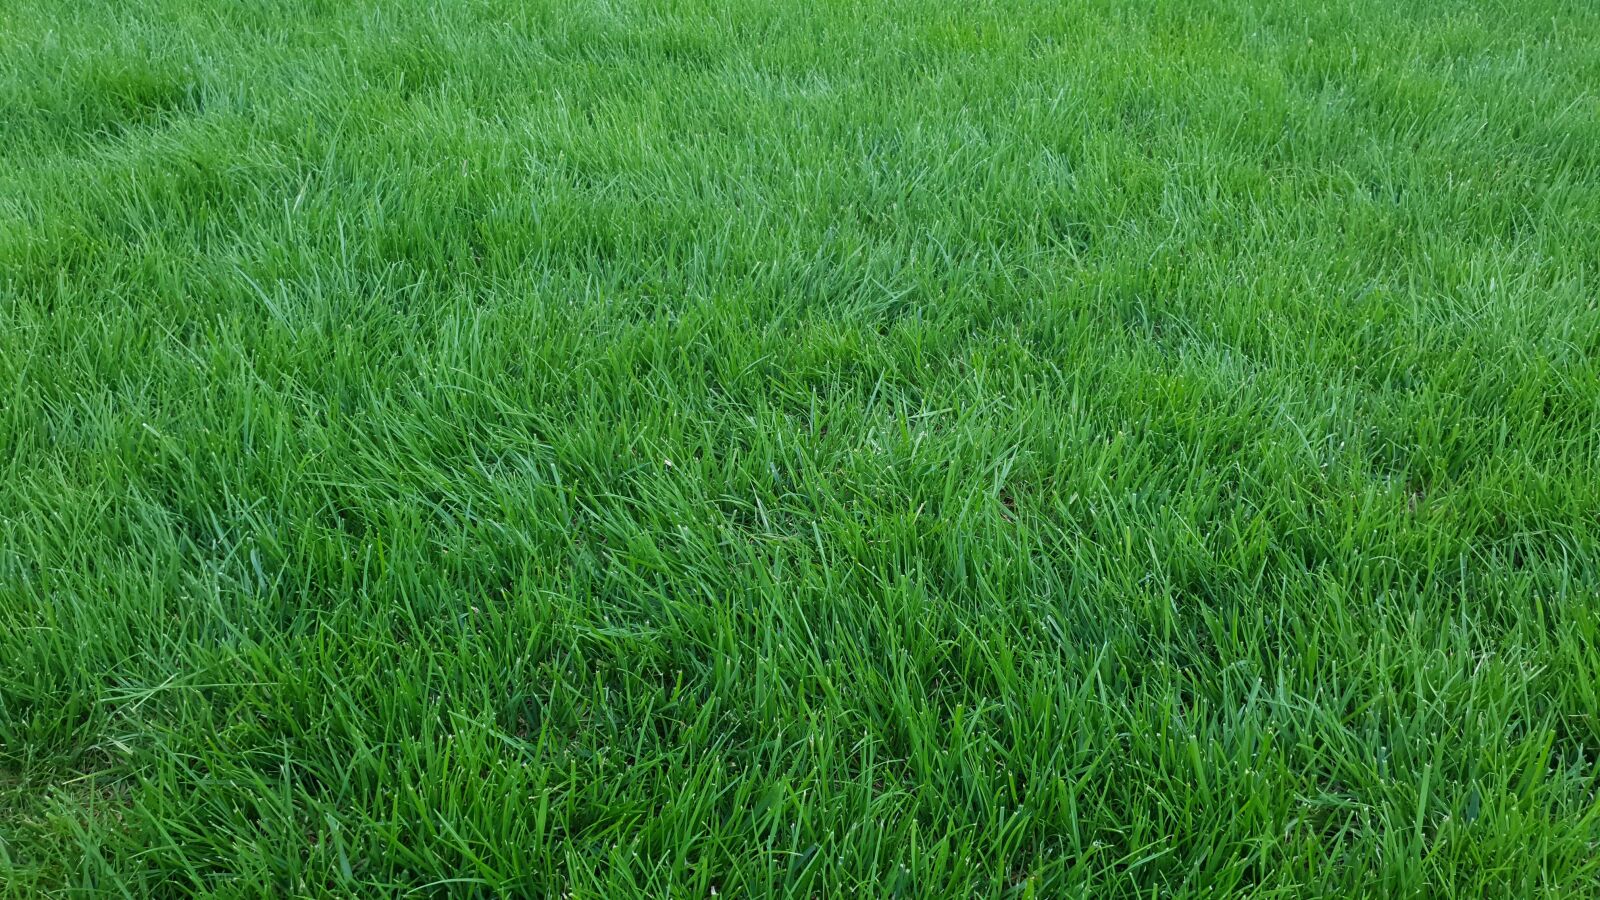 Samsung Galaxy S10e sample photo. Garden, grass, green photography